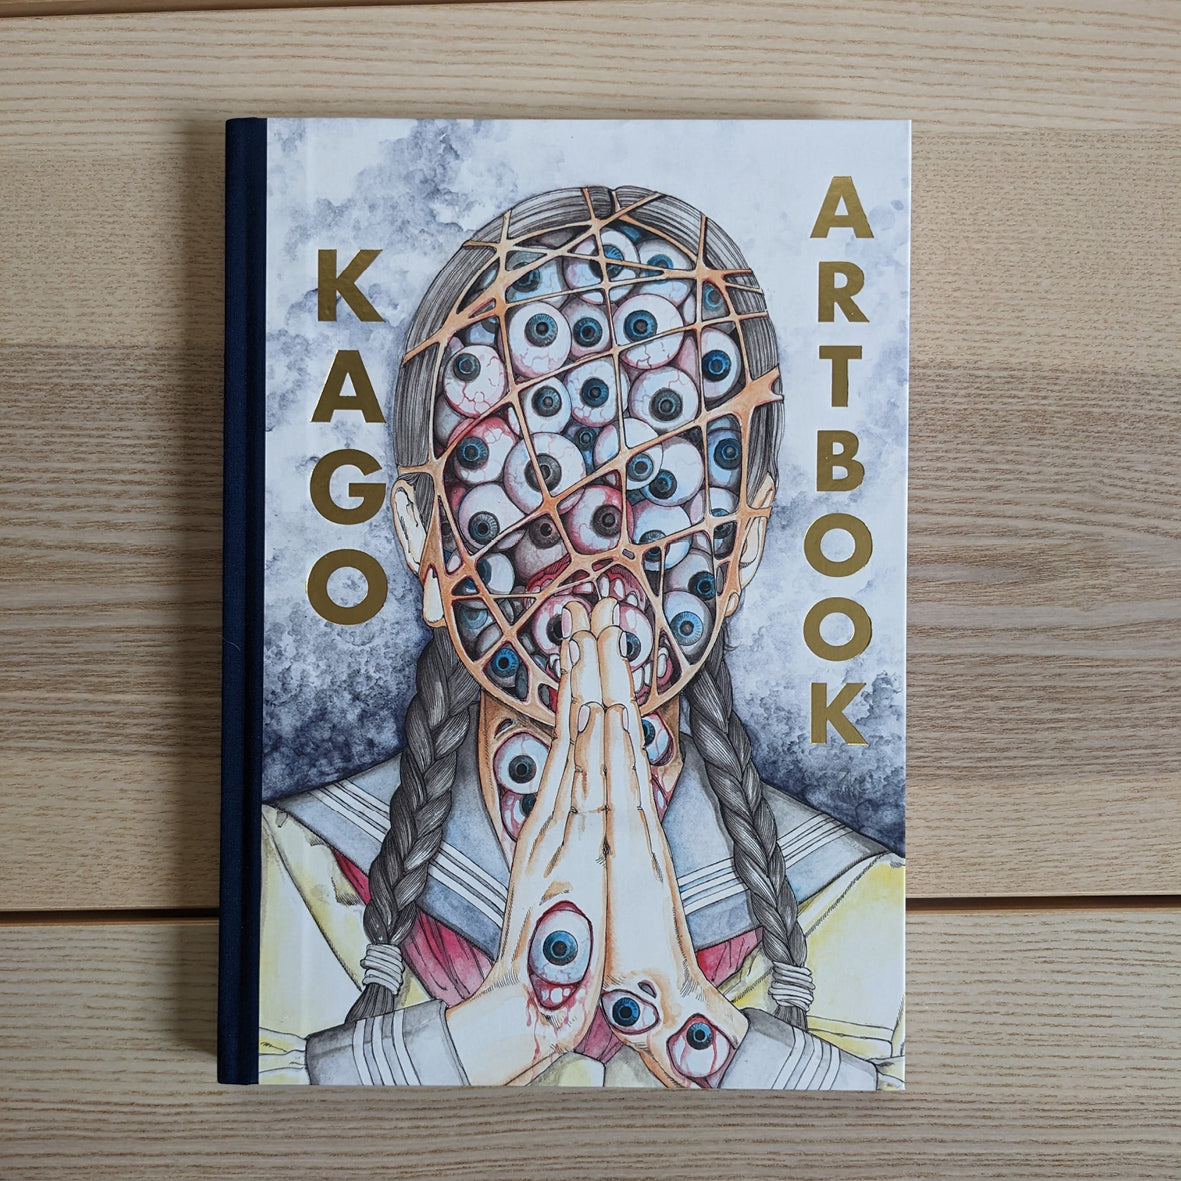 SHINTARO KAGO : ARTBOOK VOL.2 (299 COPIES LIMITED EDITION) 24 EXCLUSIVE PAGES !